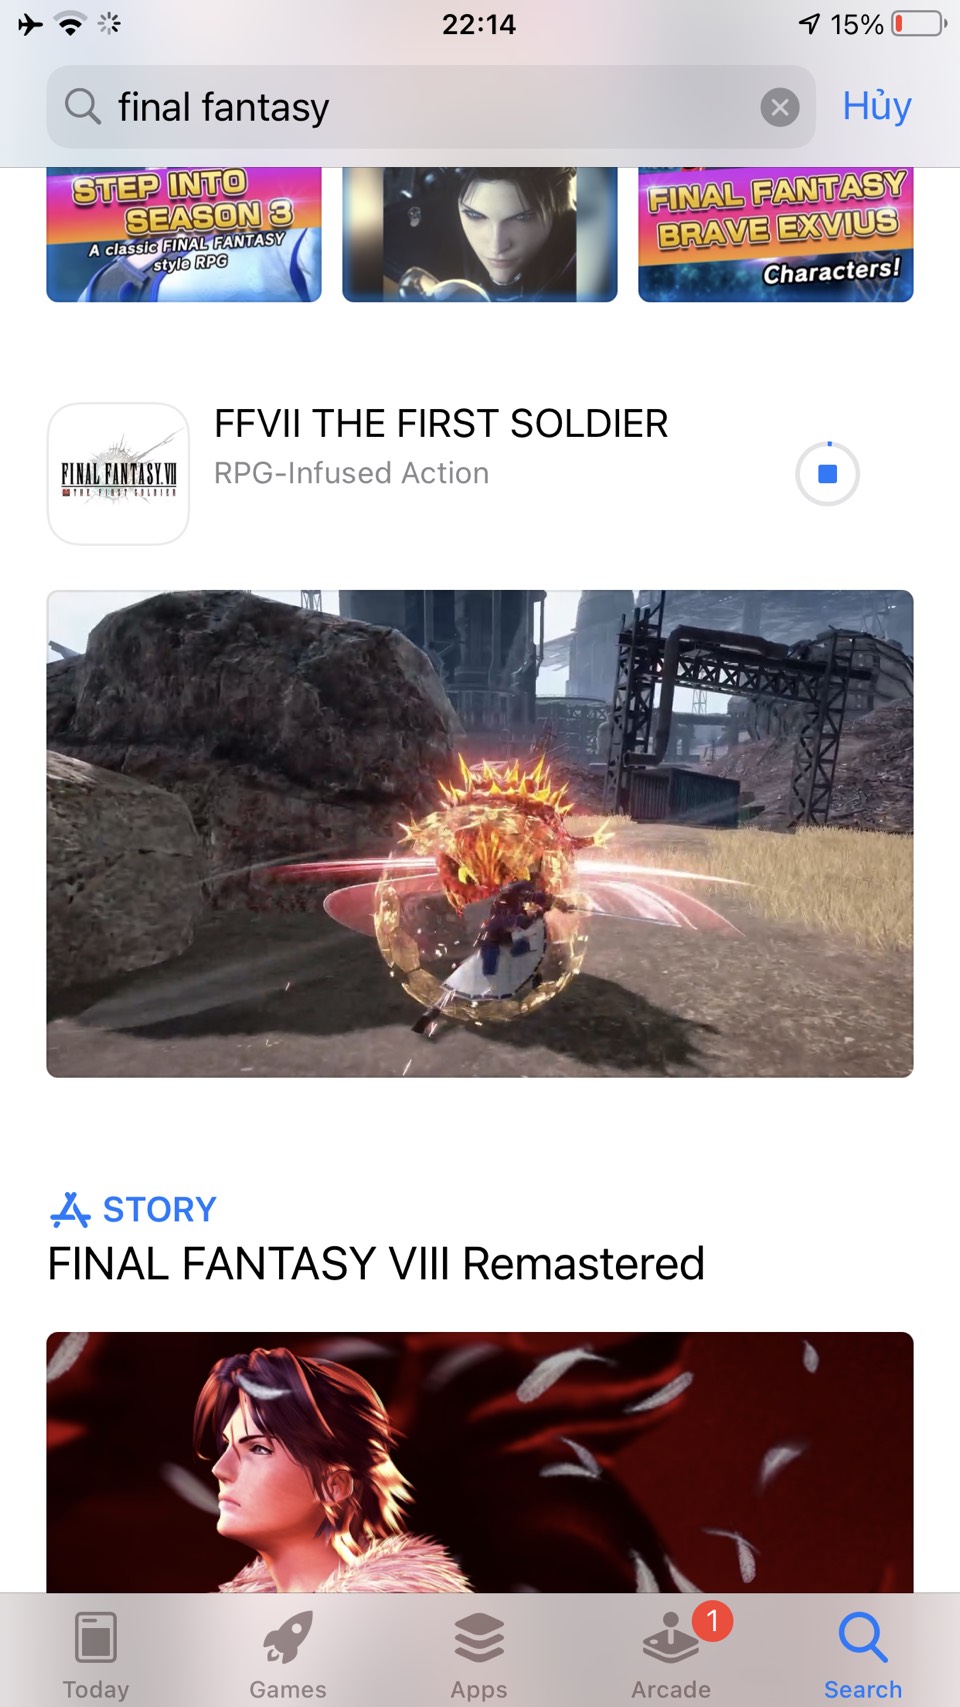 Nóng! Siêu phẩm Final Fantasy VII đã cho tải trước, hướng dẫn tải trong 1 nốt nhạc, bất chấp chặn người Việt - Ảnh 7.